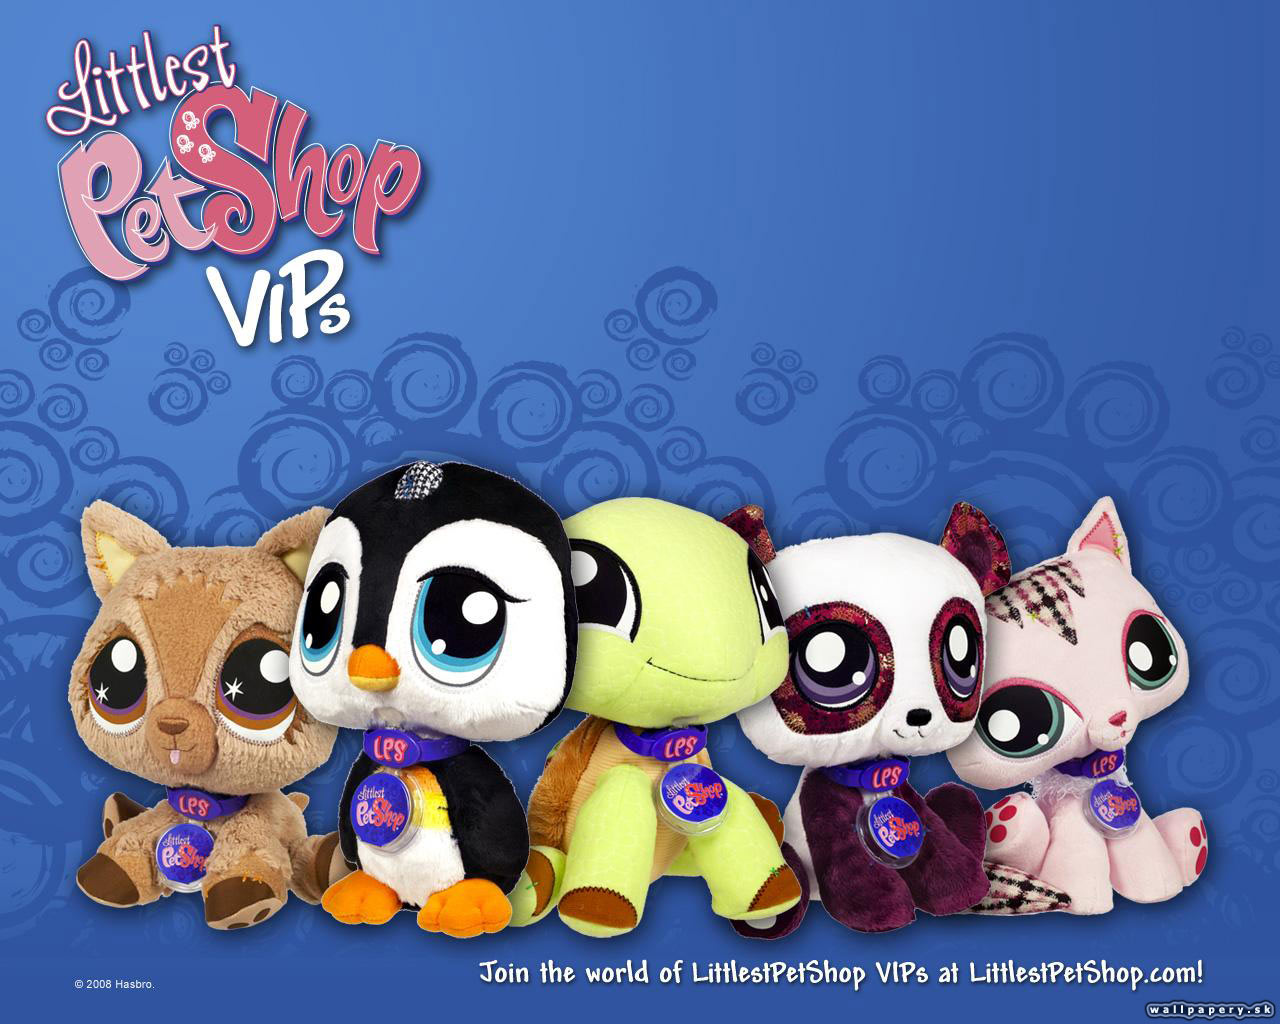 Heart pet shop. Little is Pet shop игра. My Littlest Pet shop игра. Littlest Pet shop 2010. Littlest Pet shop 2011.